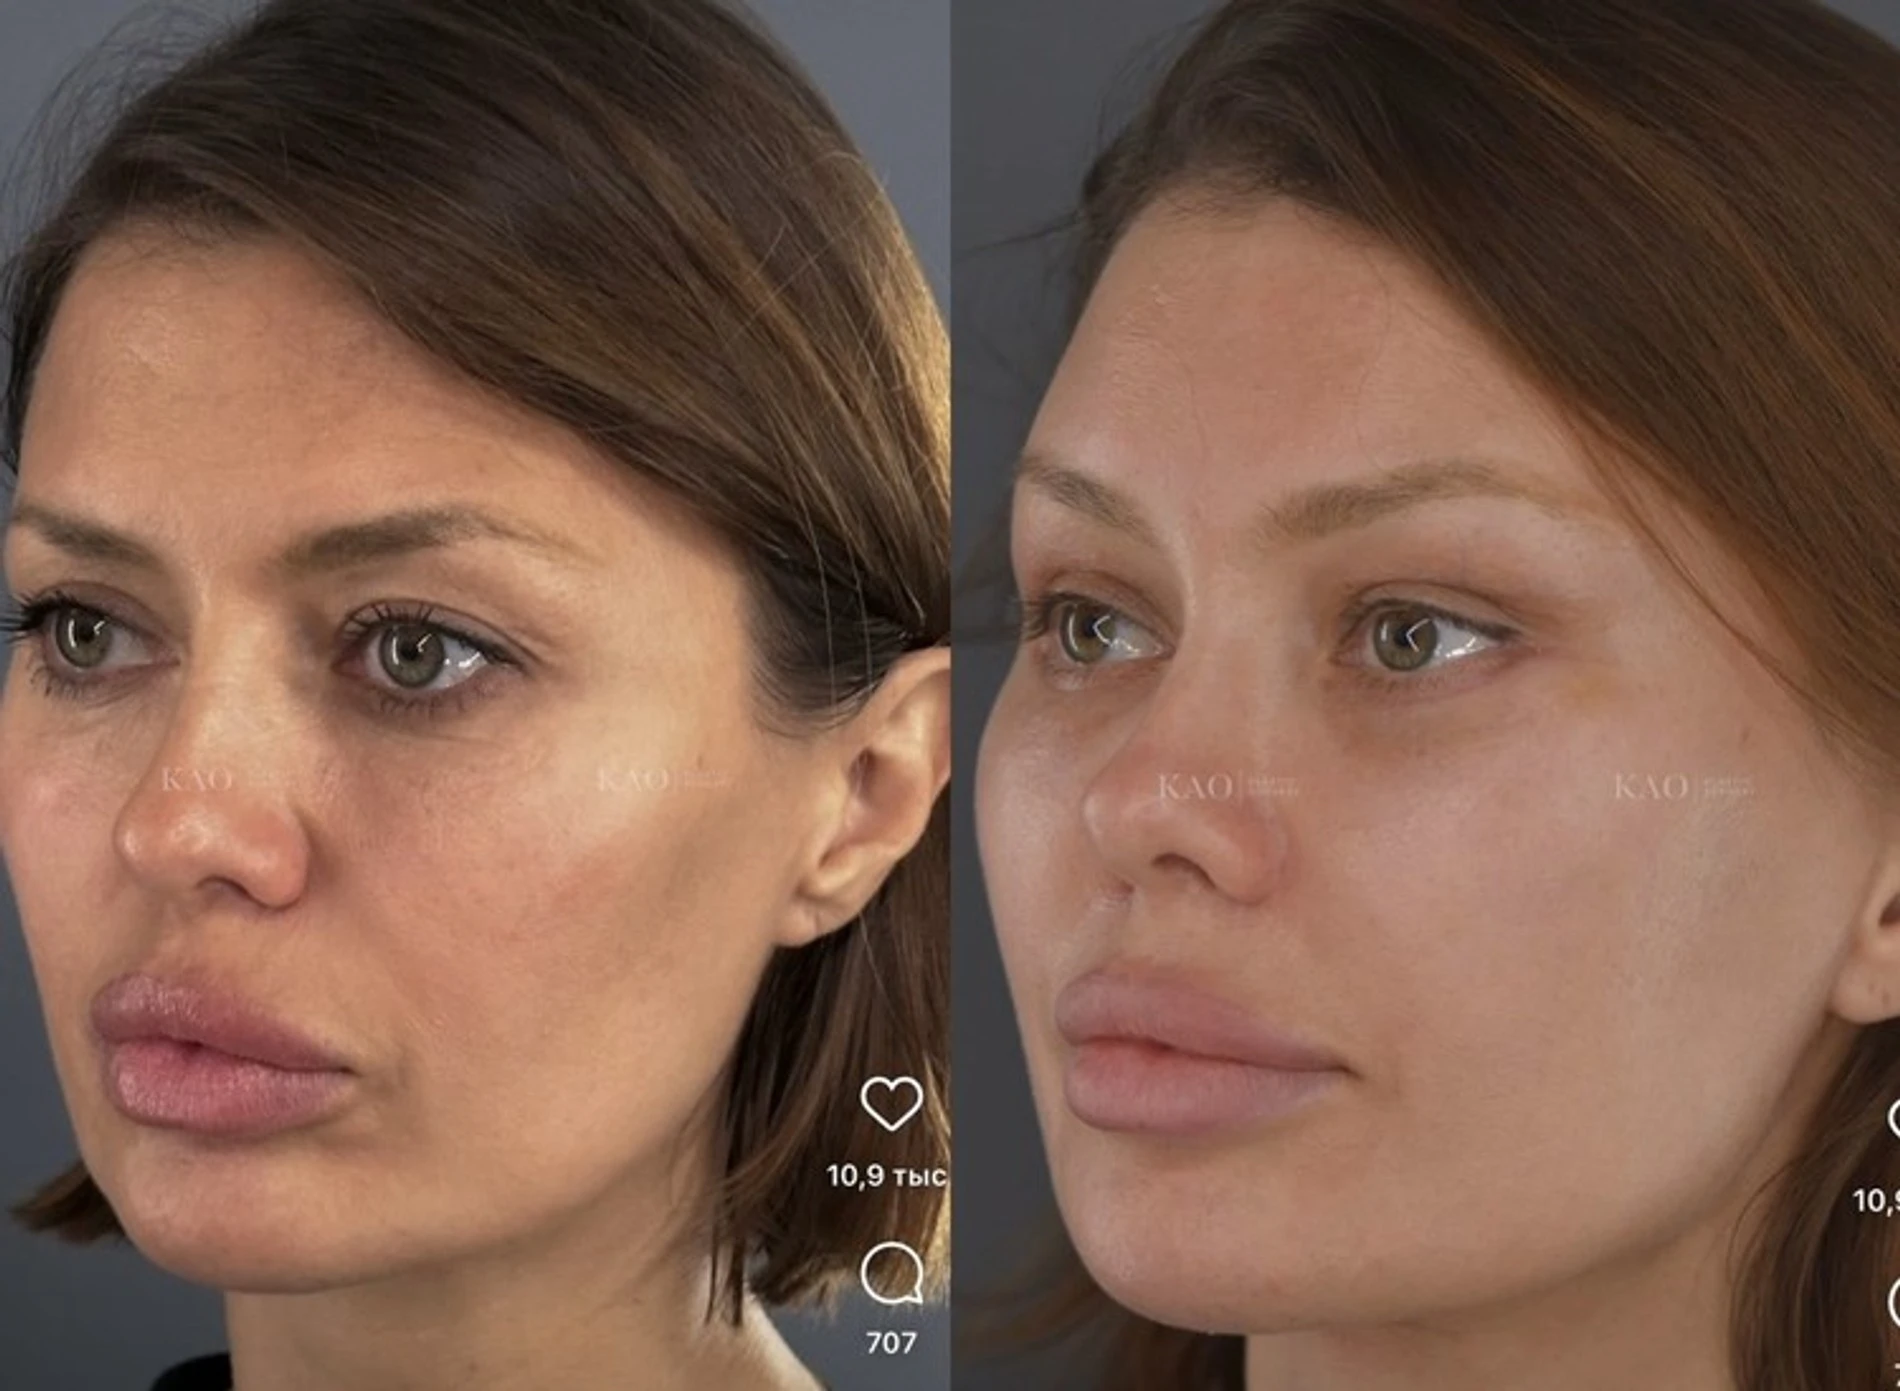 Виктория Боня до и после пластический операции. Фото: Инстаграм* @kaoplasticsurgery